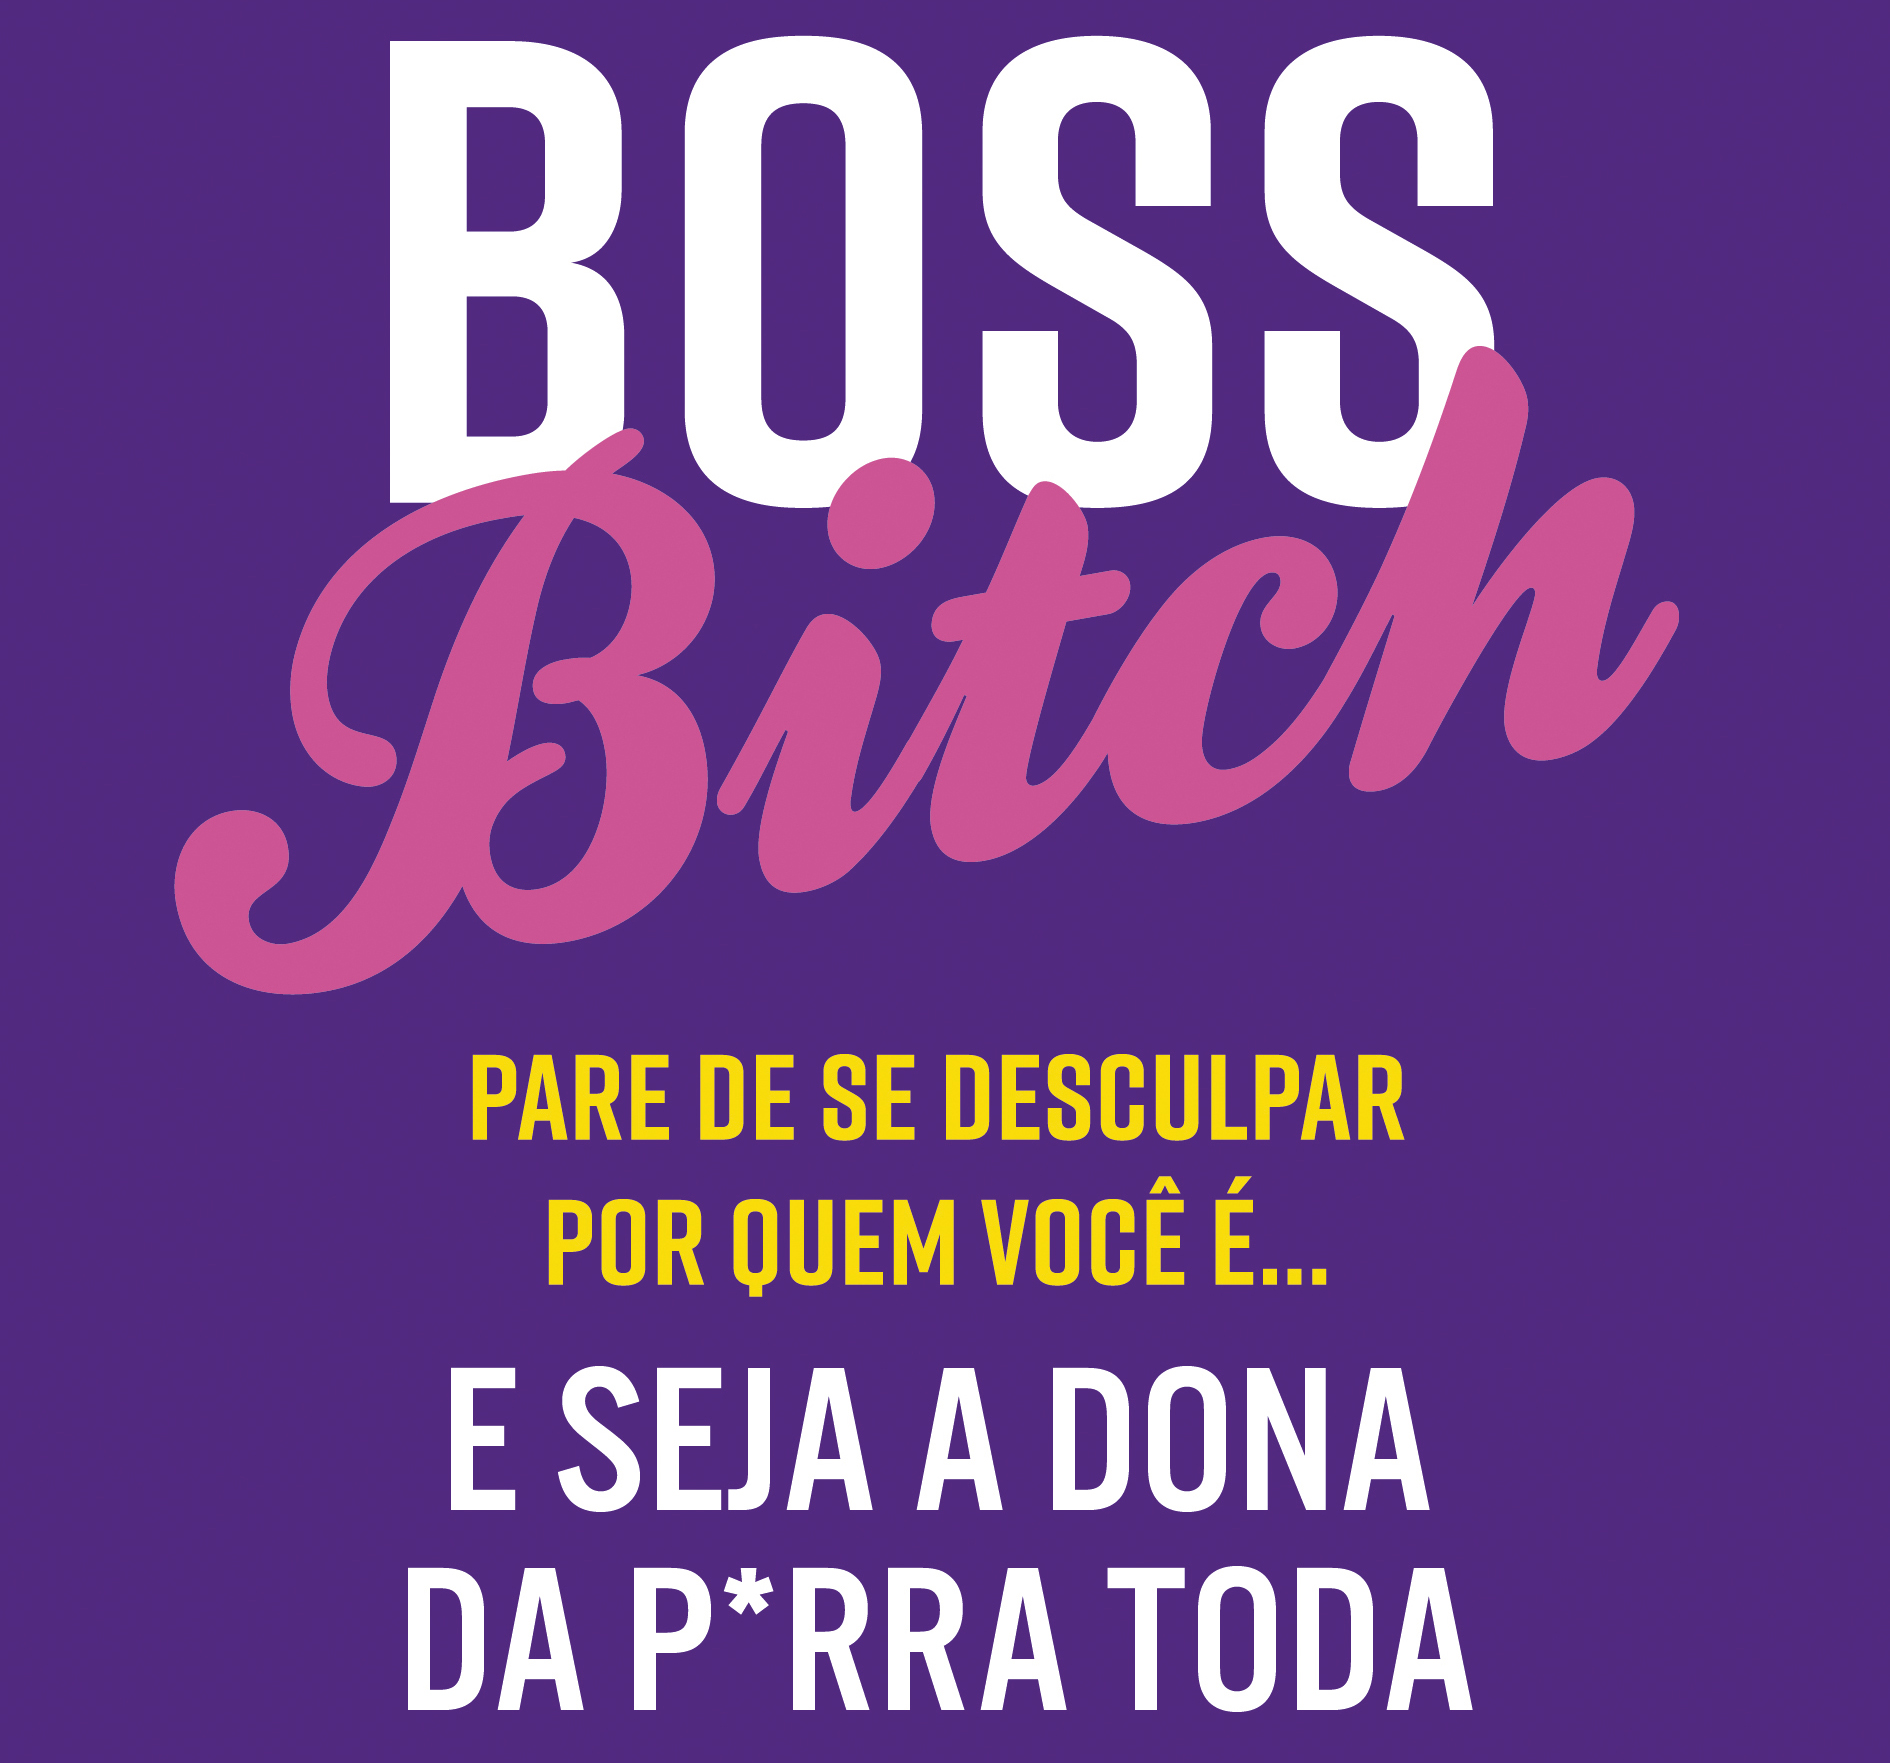 boss bitch